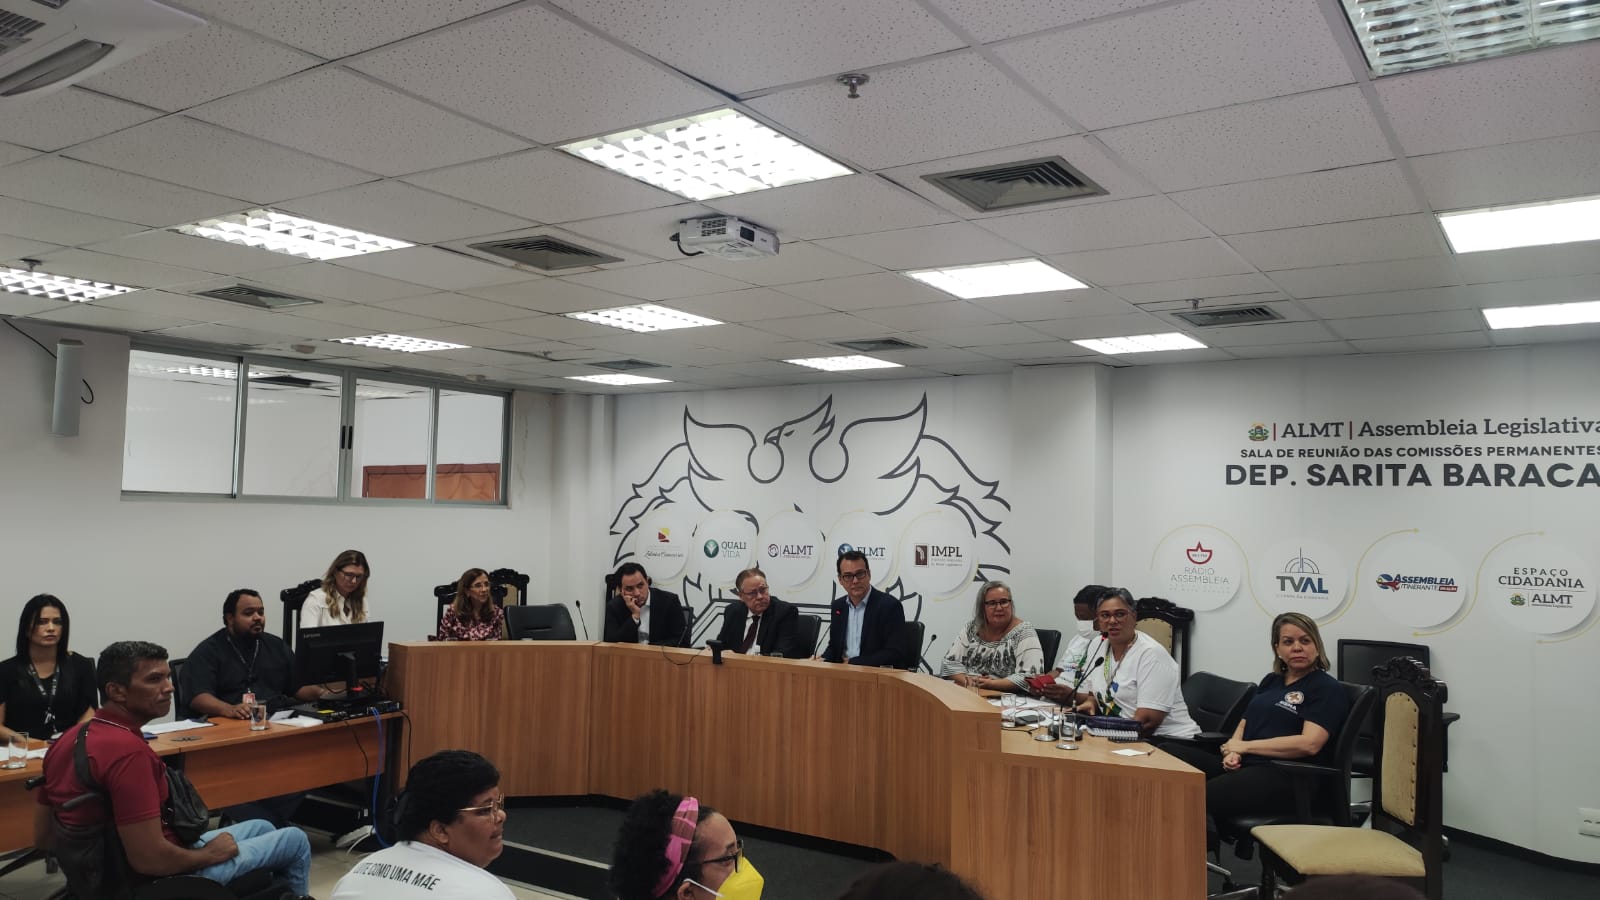 SISMA participa de Audiência Pública na ALMT para debater melhorias no Tratamento Fora do Domicílio